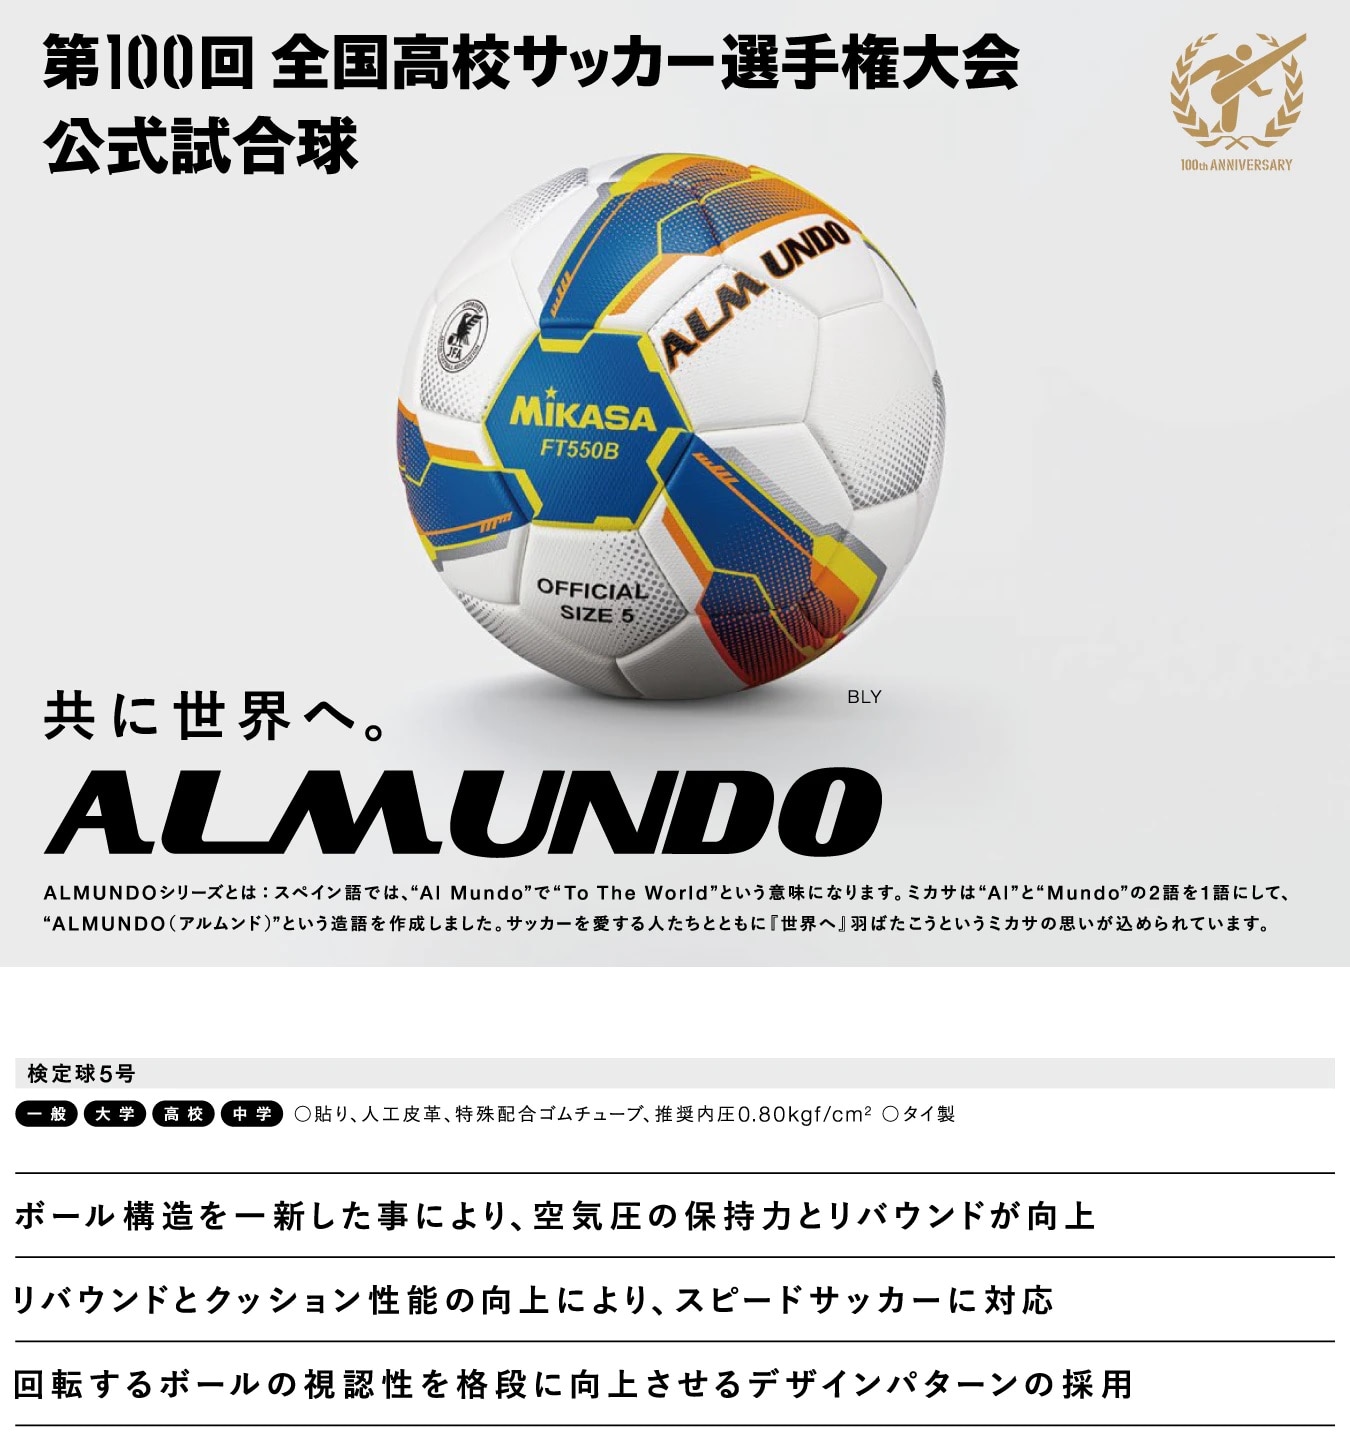 大好き MIKASA サッカーボール 5号ALMUNDO 検定球 貼り 土用 アルムンド FT551B-GR-SBY ミカサ 